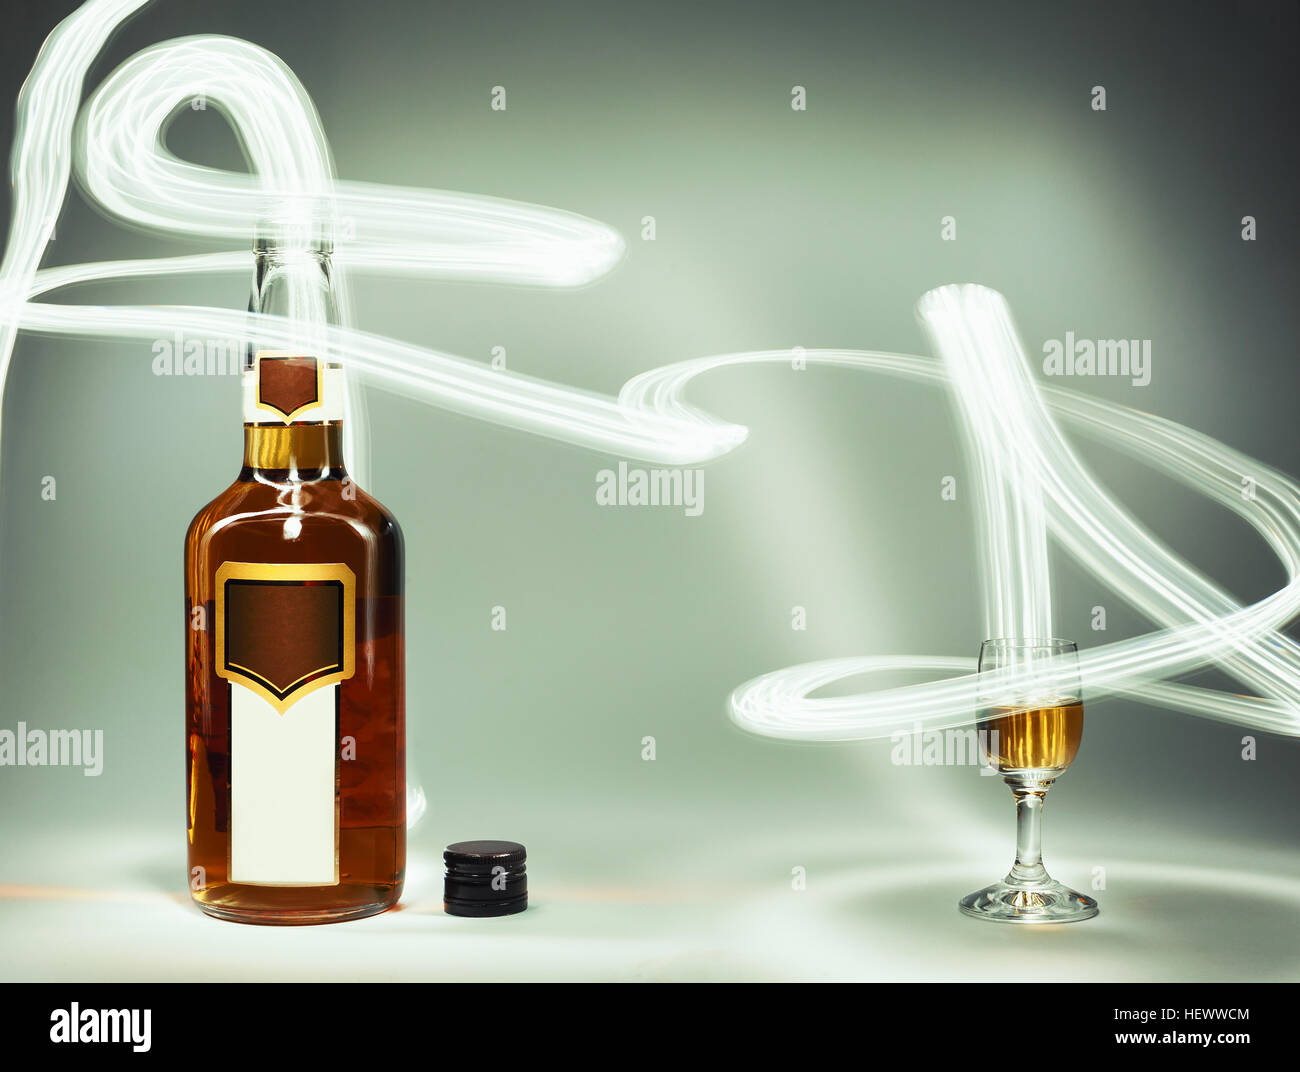 Composición conceptual de bebidas alcohólicas, completo y un vaso de brandy y efectos de iluminación. Foto de stock